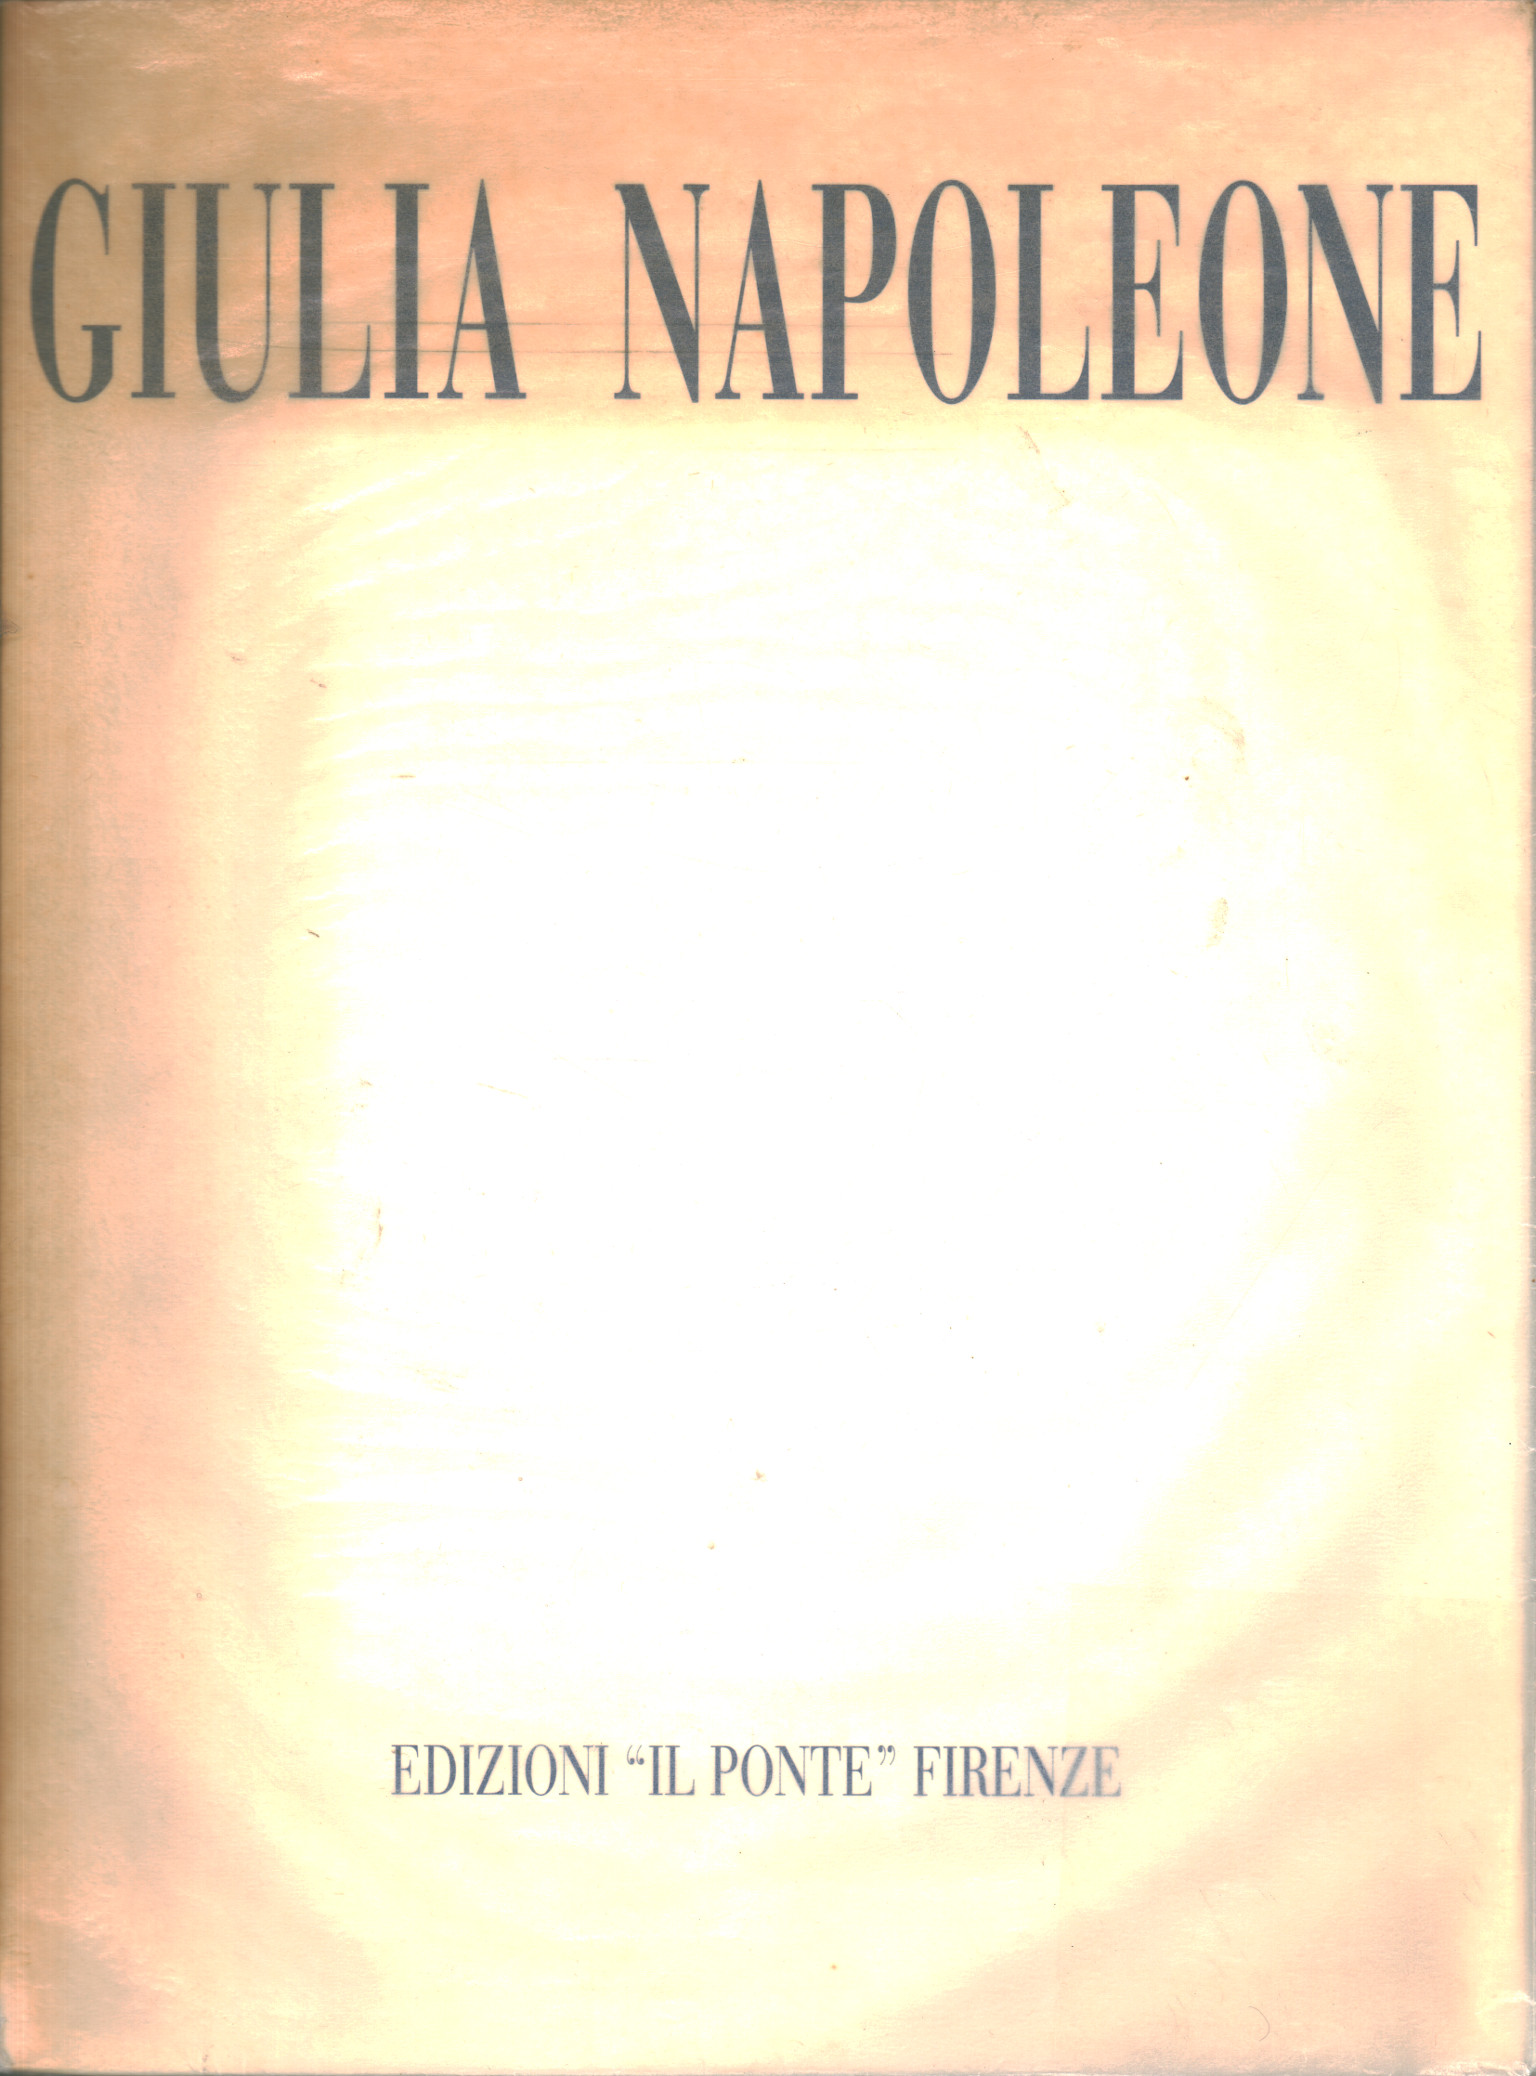 Giulia Napoleone. La percepción de la luz como em, Andrea Alibrandi